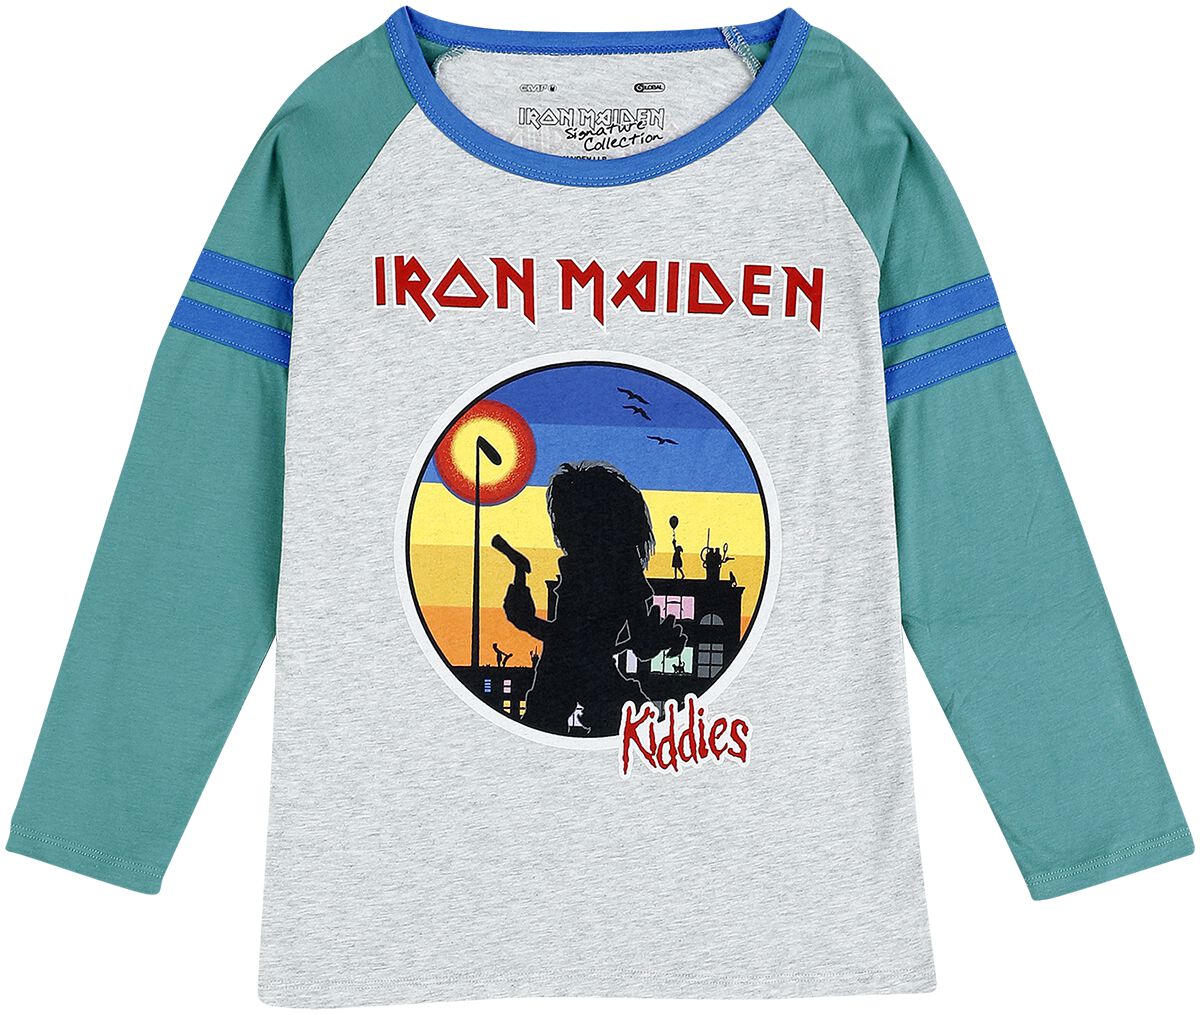 Iron Maiden Langarmshirt für Kinder - Kids - EMP Signature Collection - für Mädchen & Jungen - grau/türkis  - EMP exklusives Merchandise!